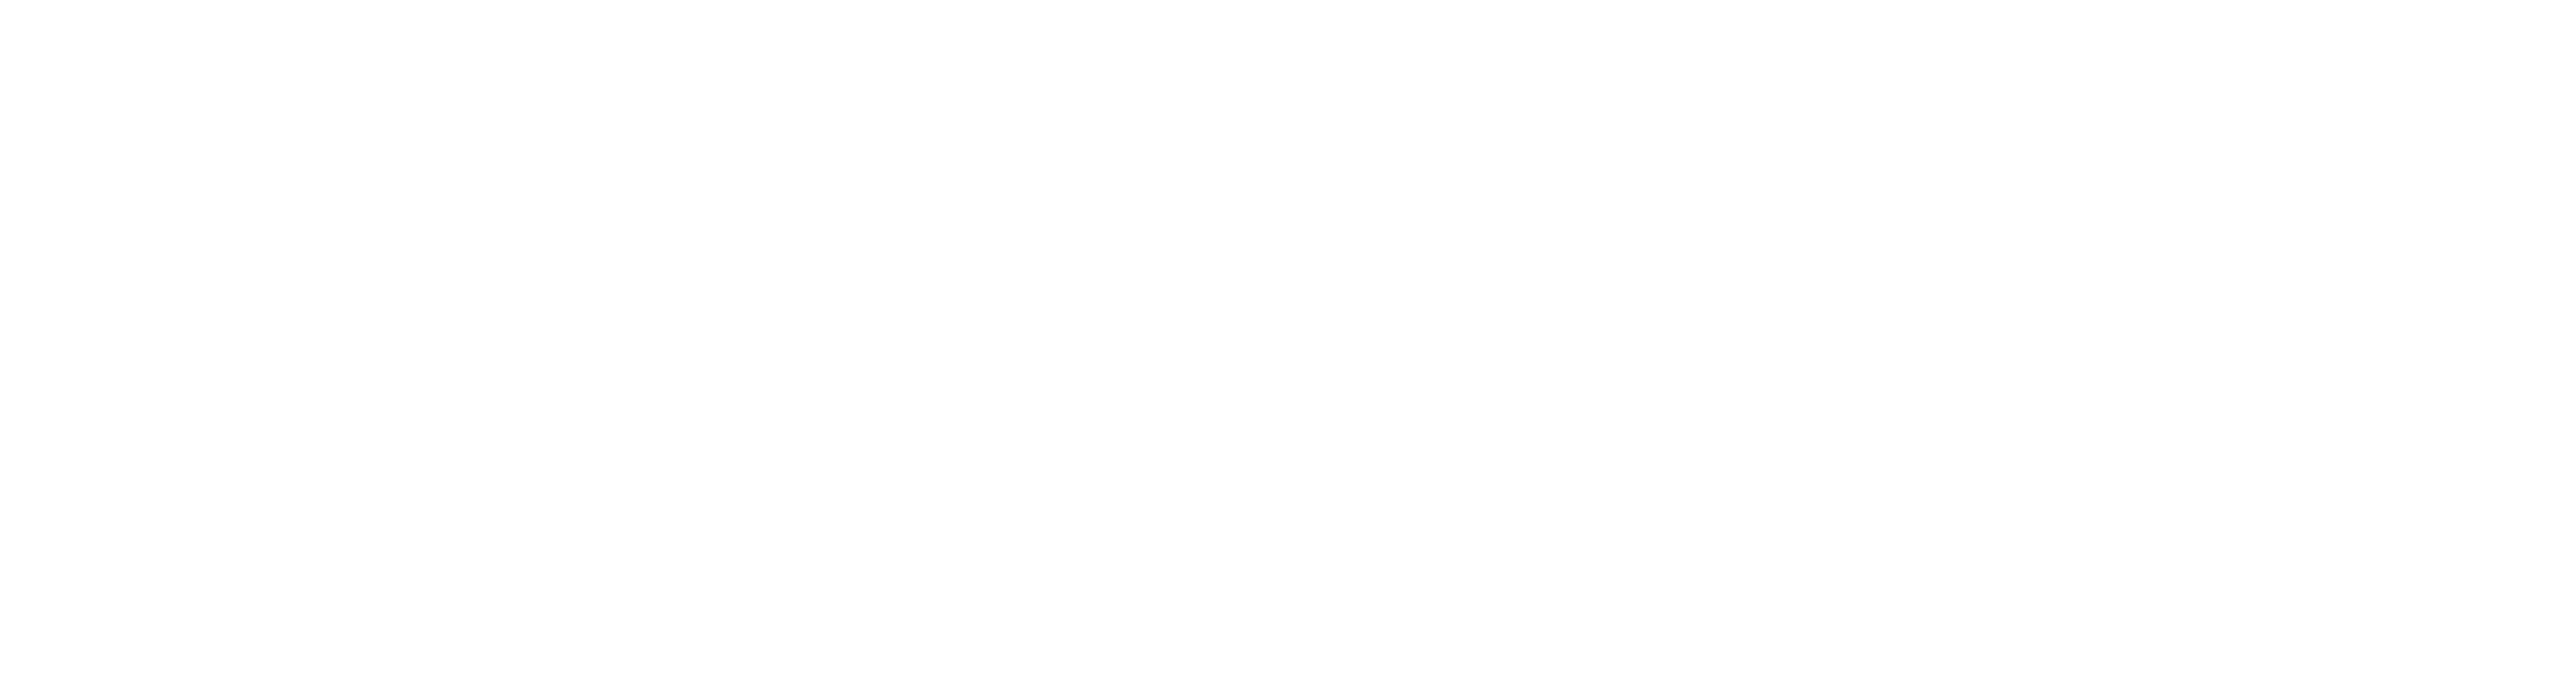 White Sqitch Logo